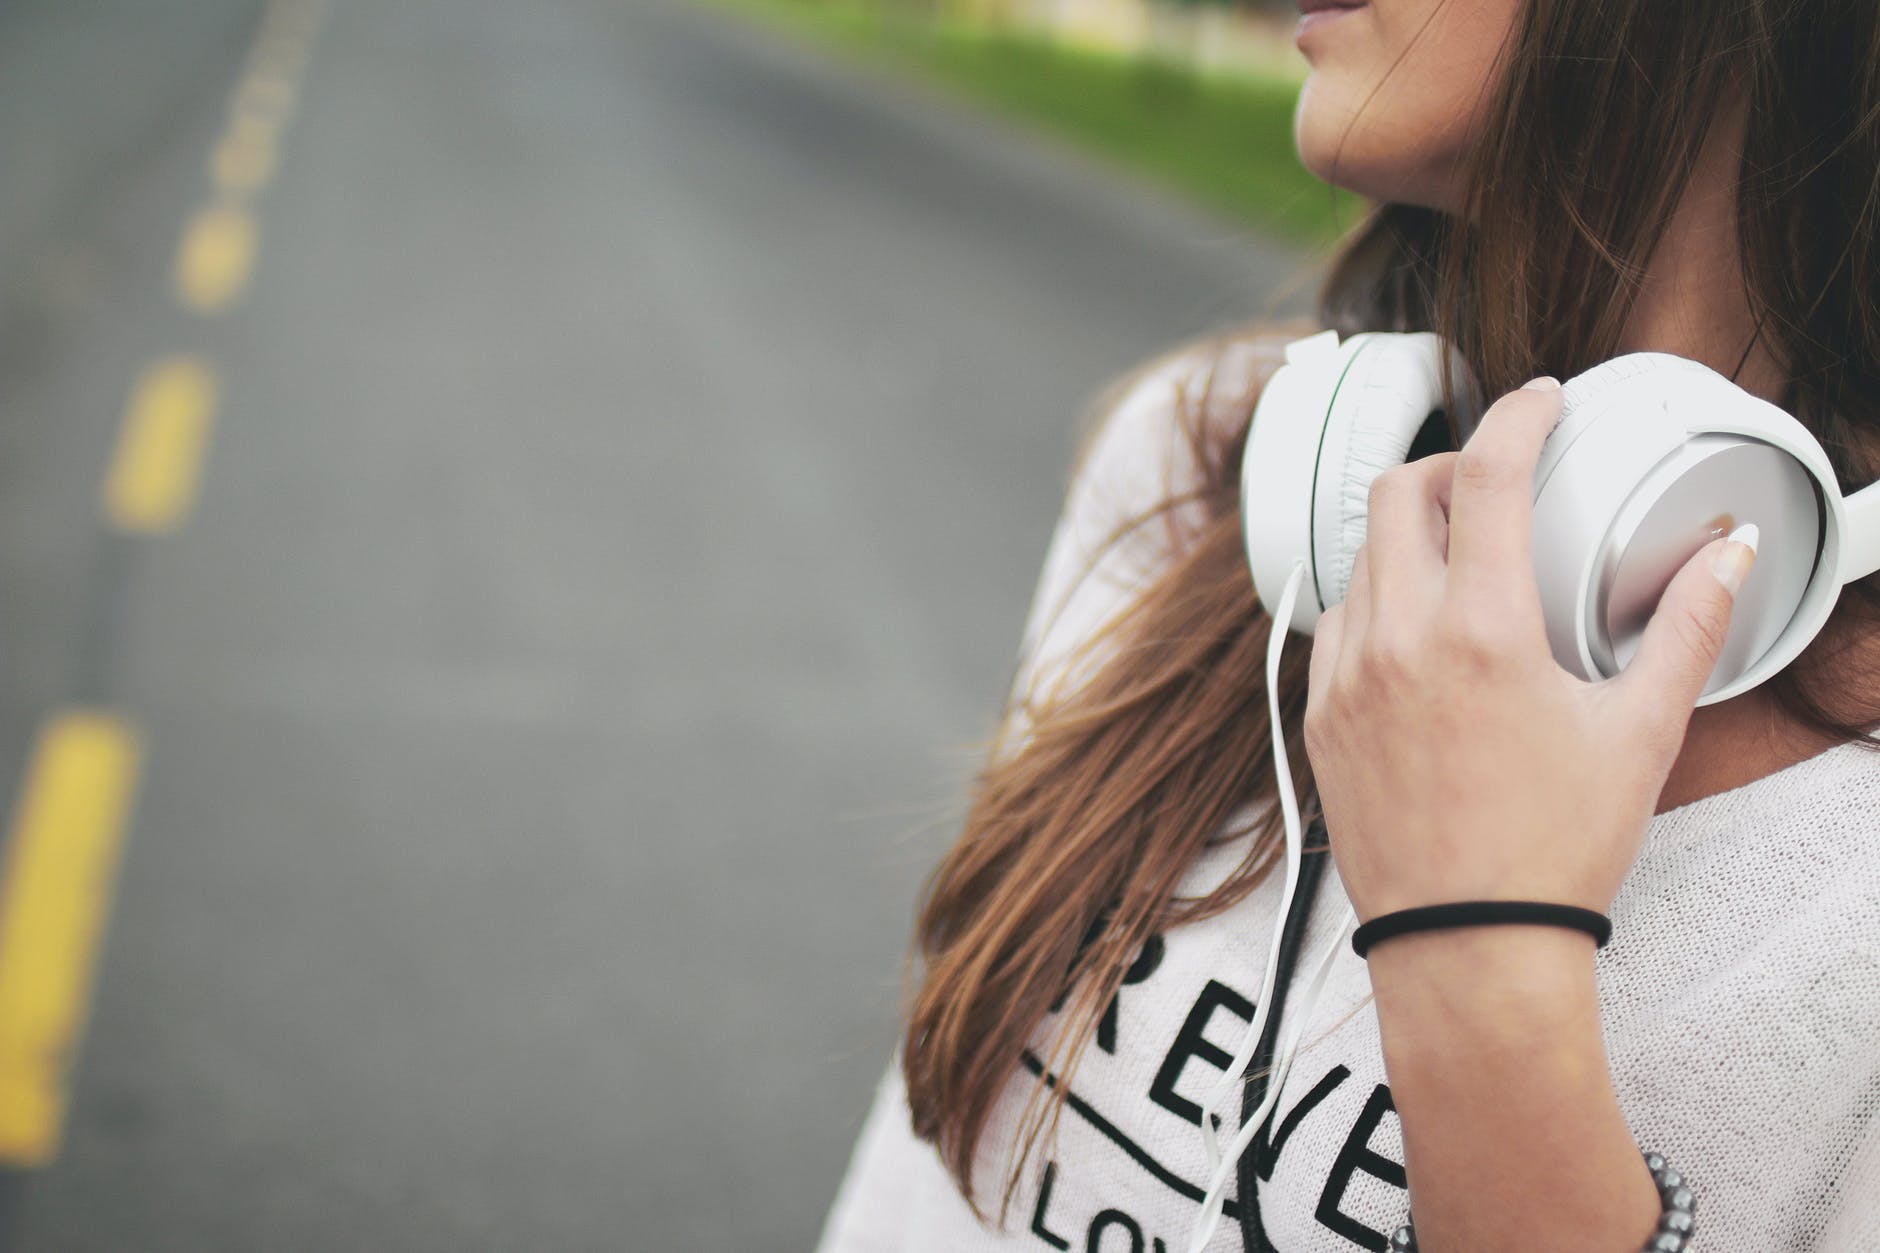 cool earphones girl headphones